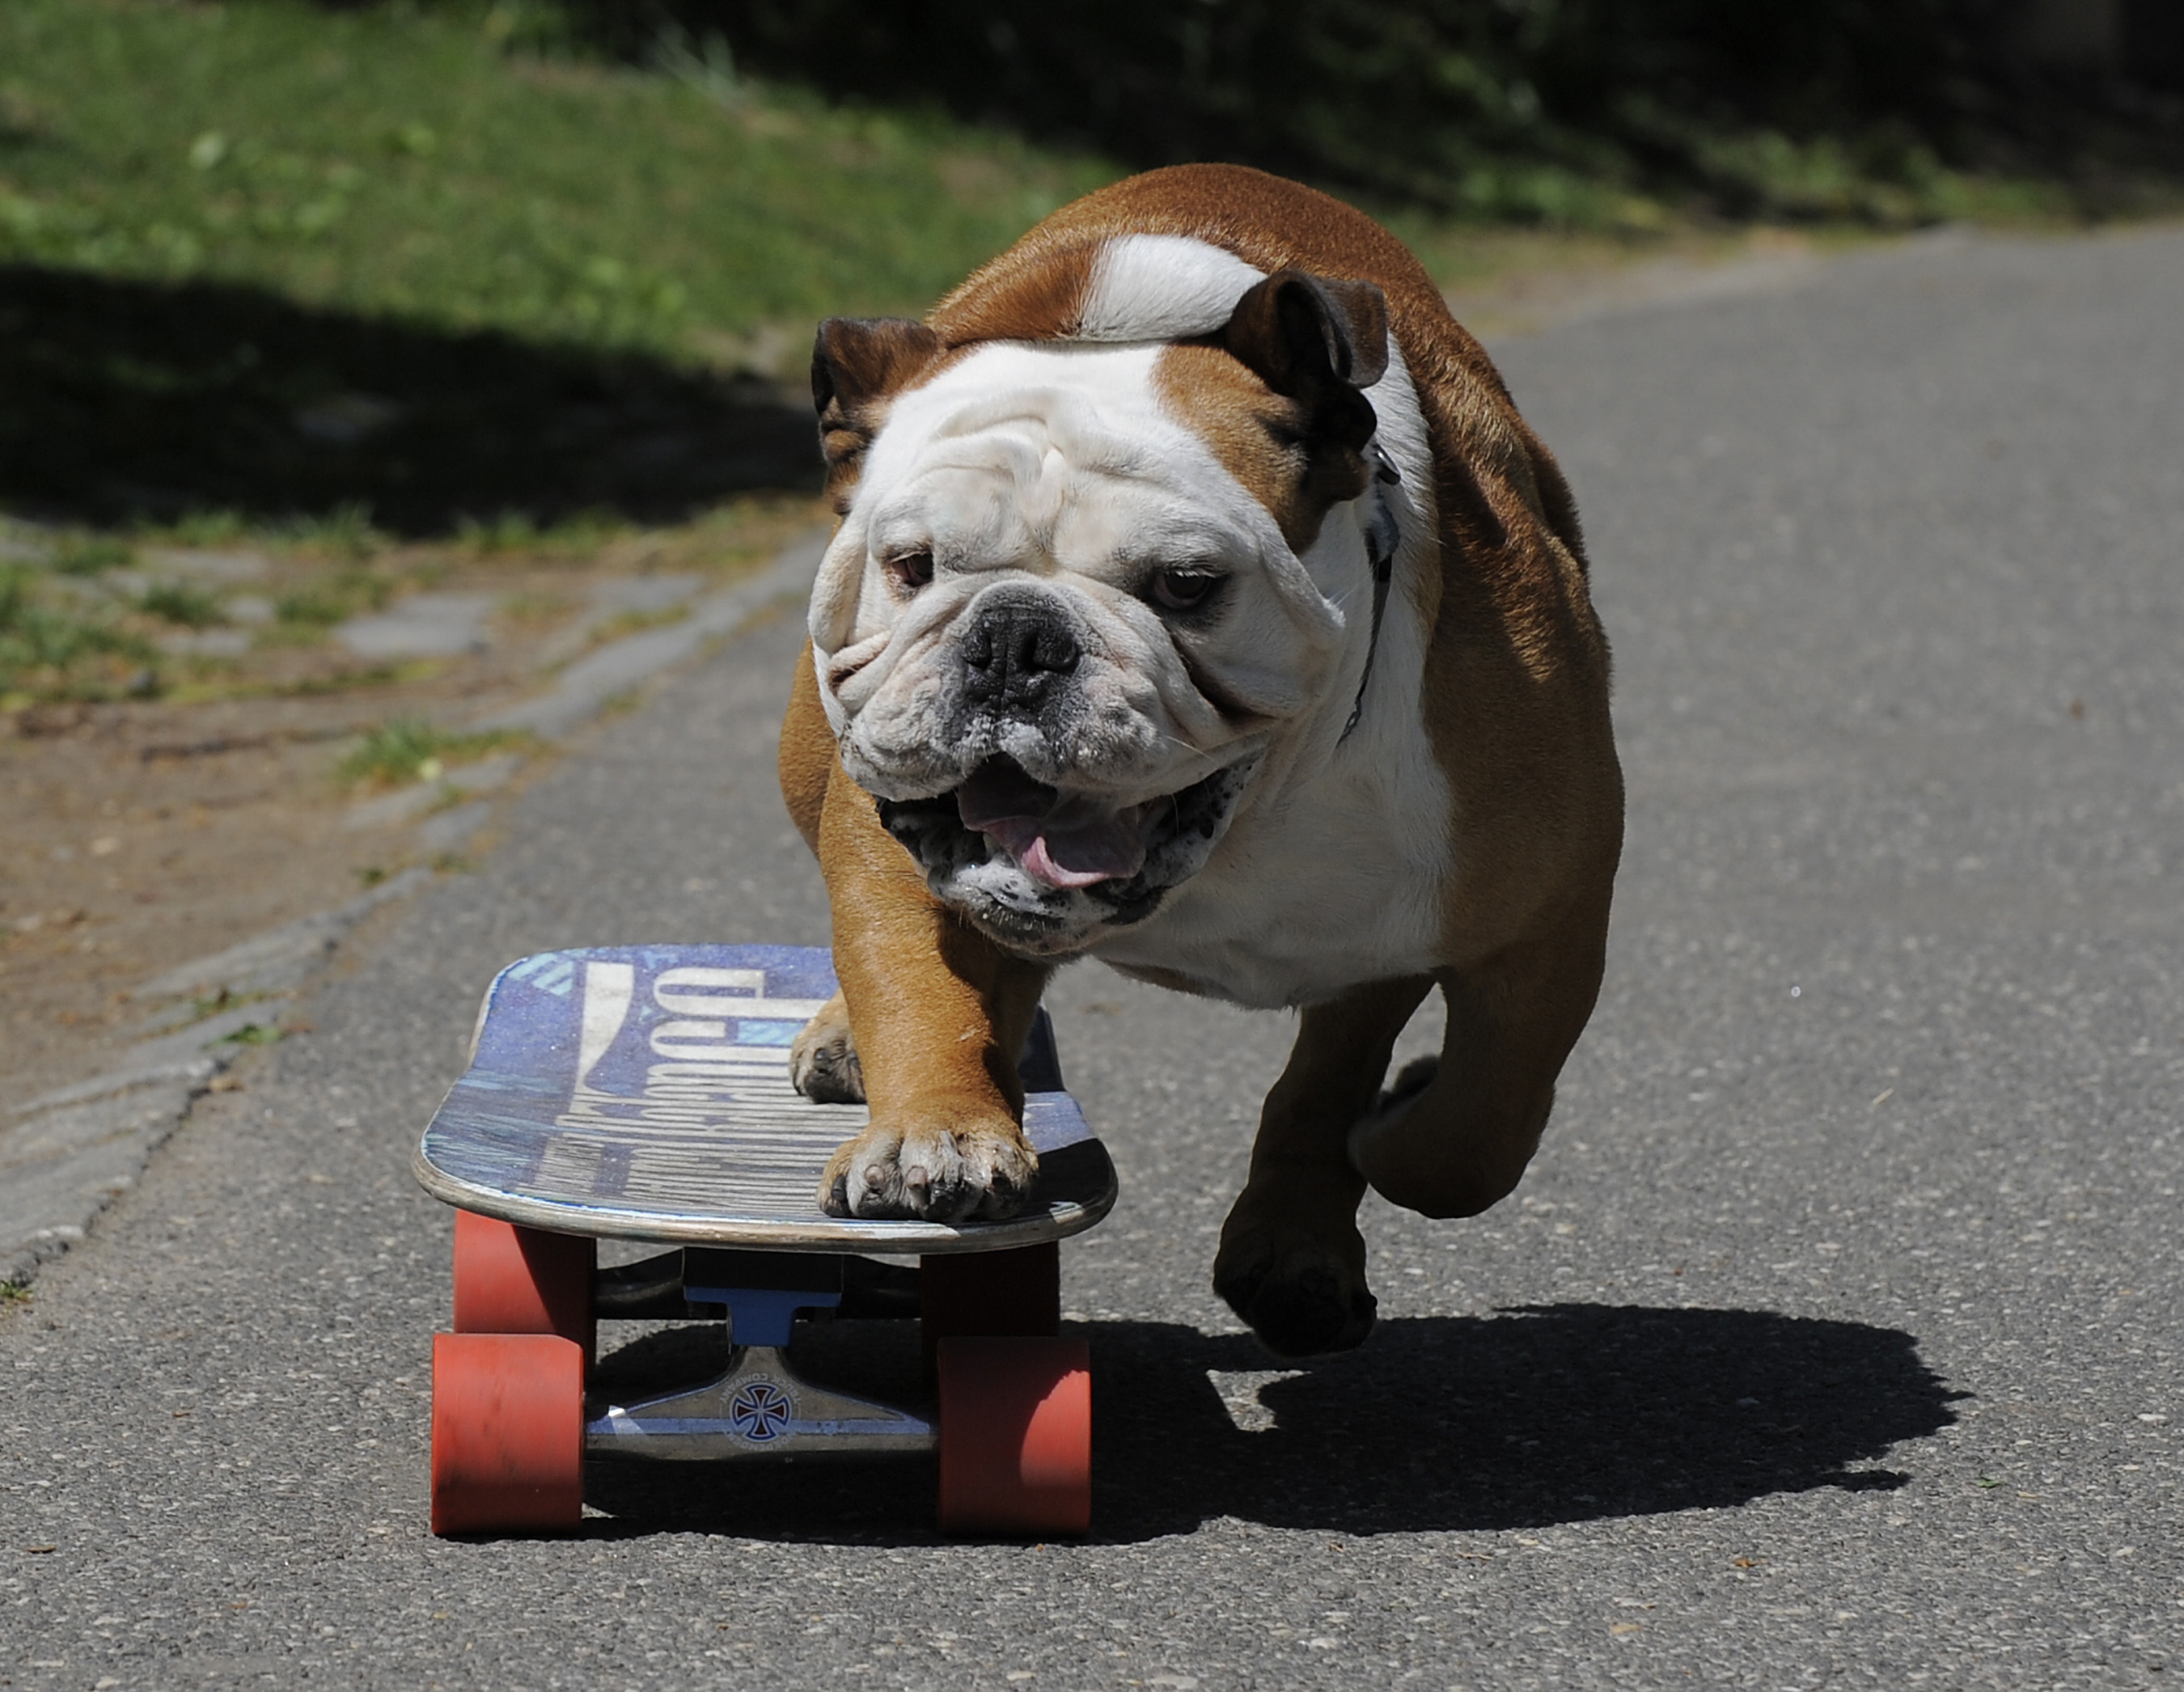 Ingelsk Bulldog op in skateboard